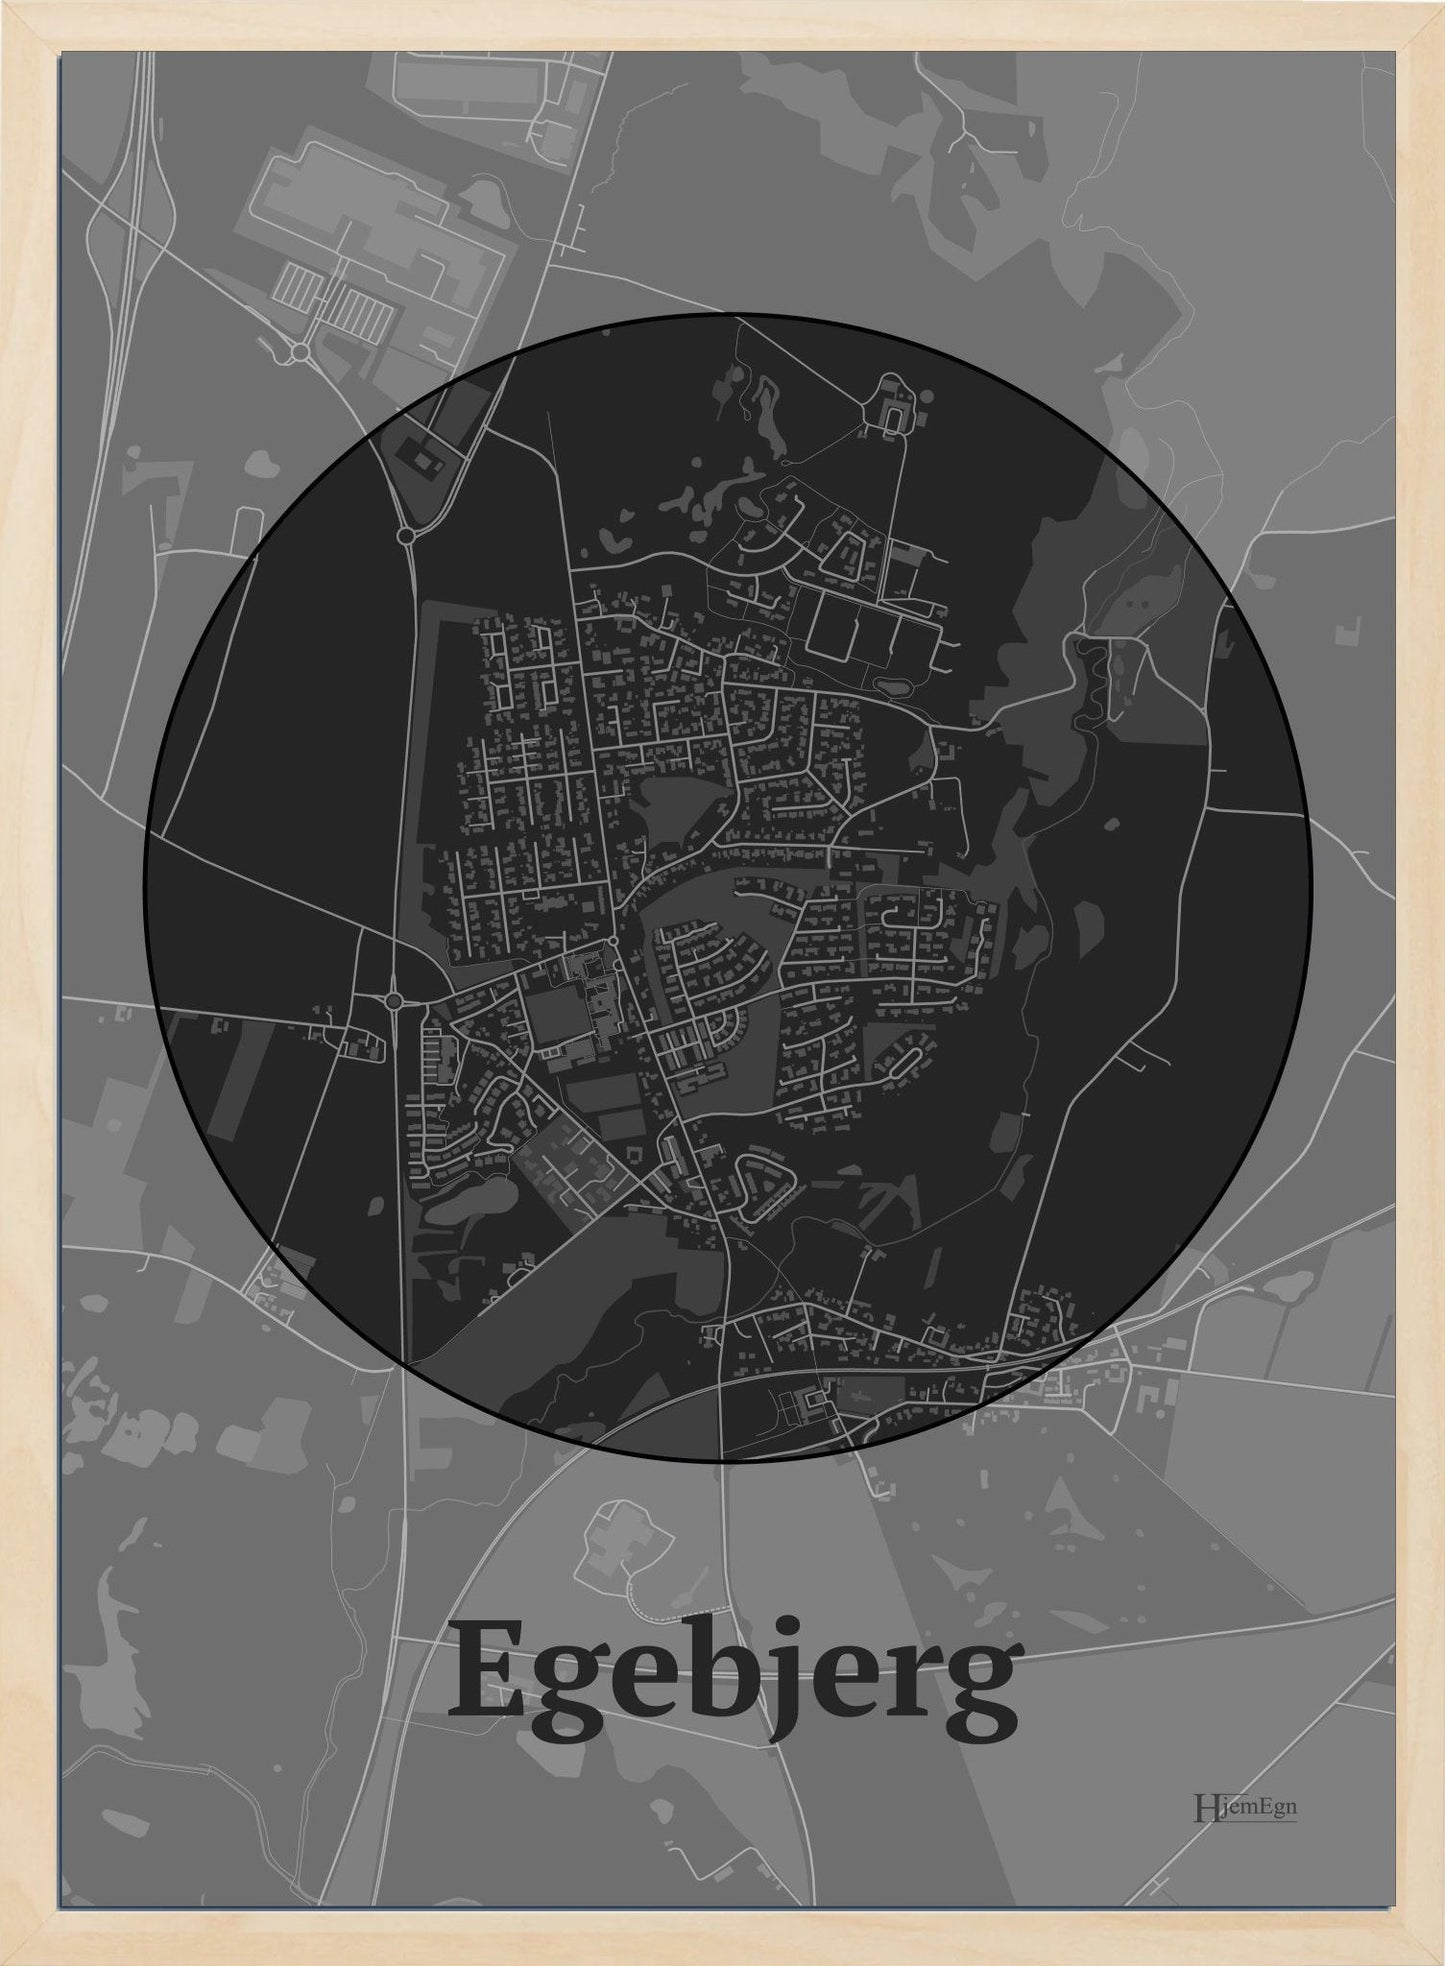 Egebjerg plakat i farve mørk grå og HjemEgn.dk design centrum. Design bykort for Egebjerg